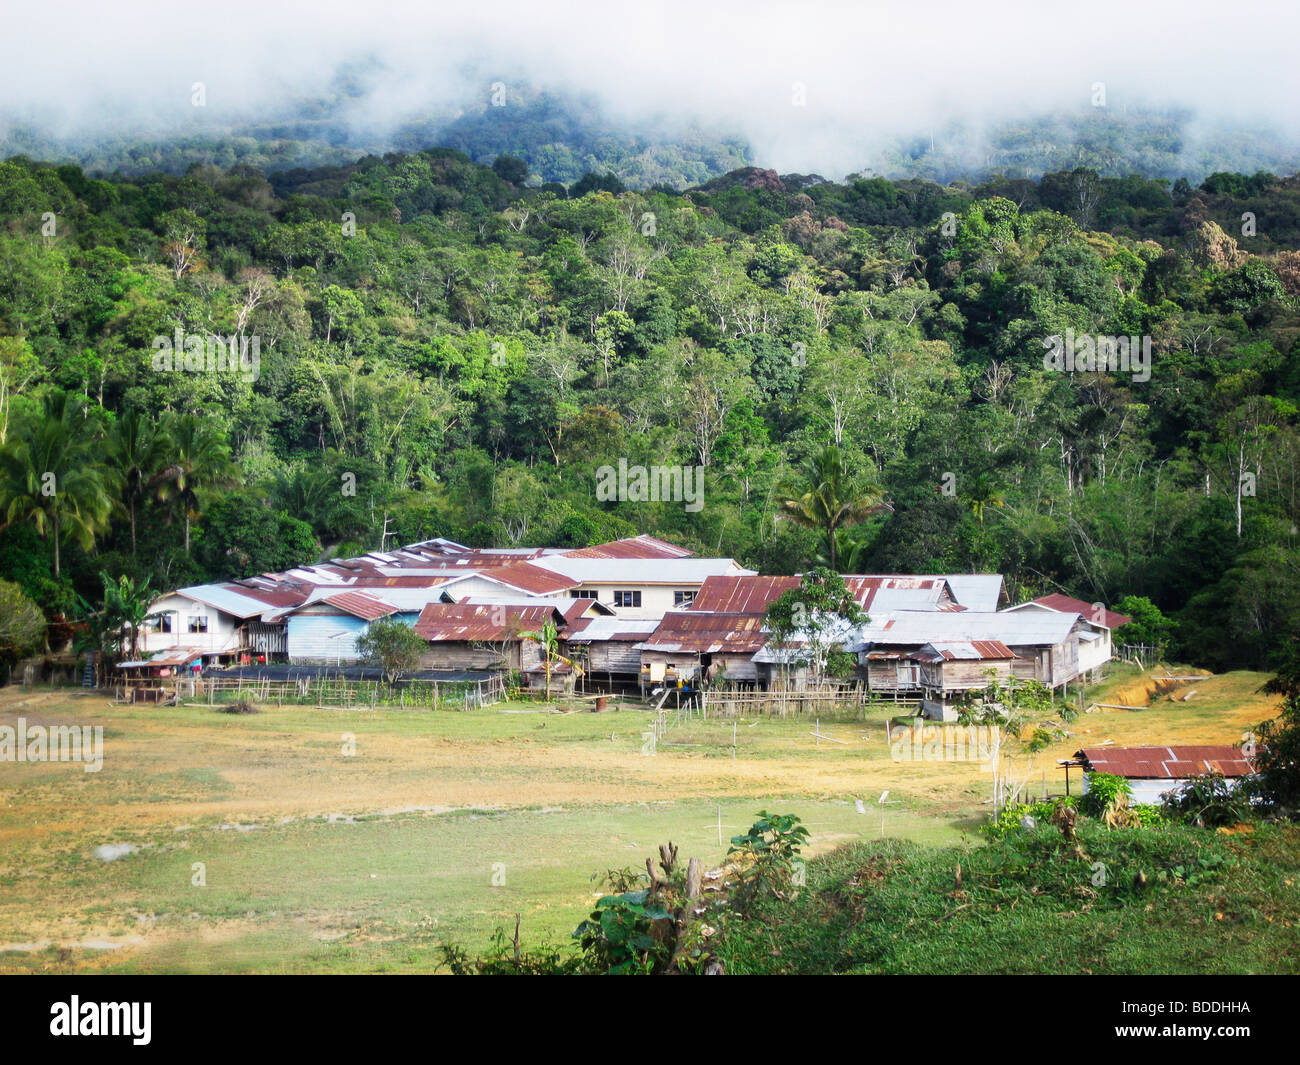 PA-Mada ist eine typische kleine Dschungel-Dorf in den Kelabit Highlands (Sarawak, Borneo, Malaysia). Stockfoto